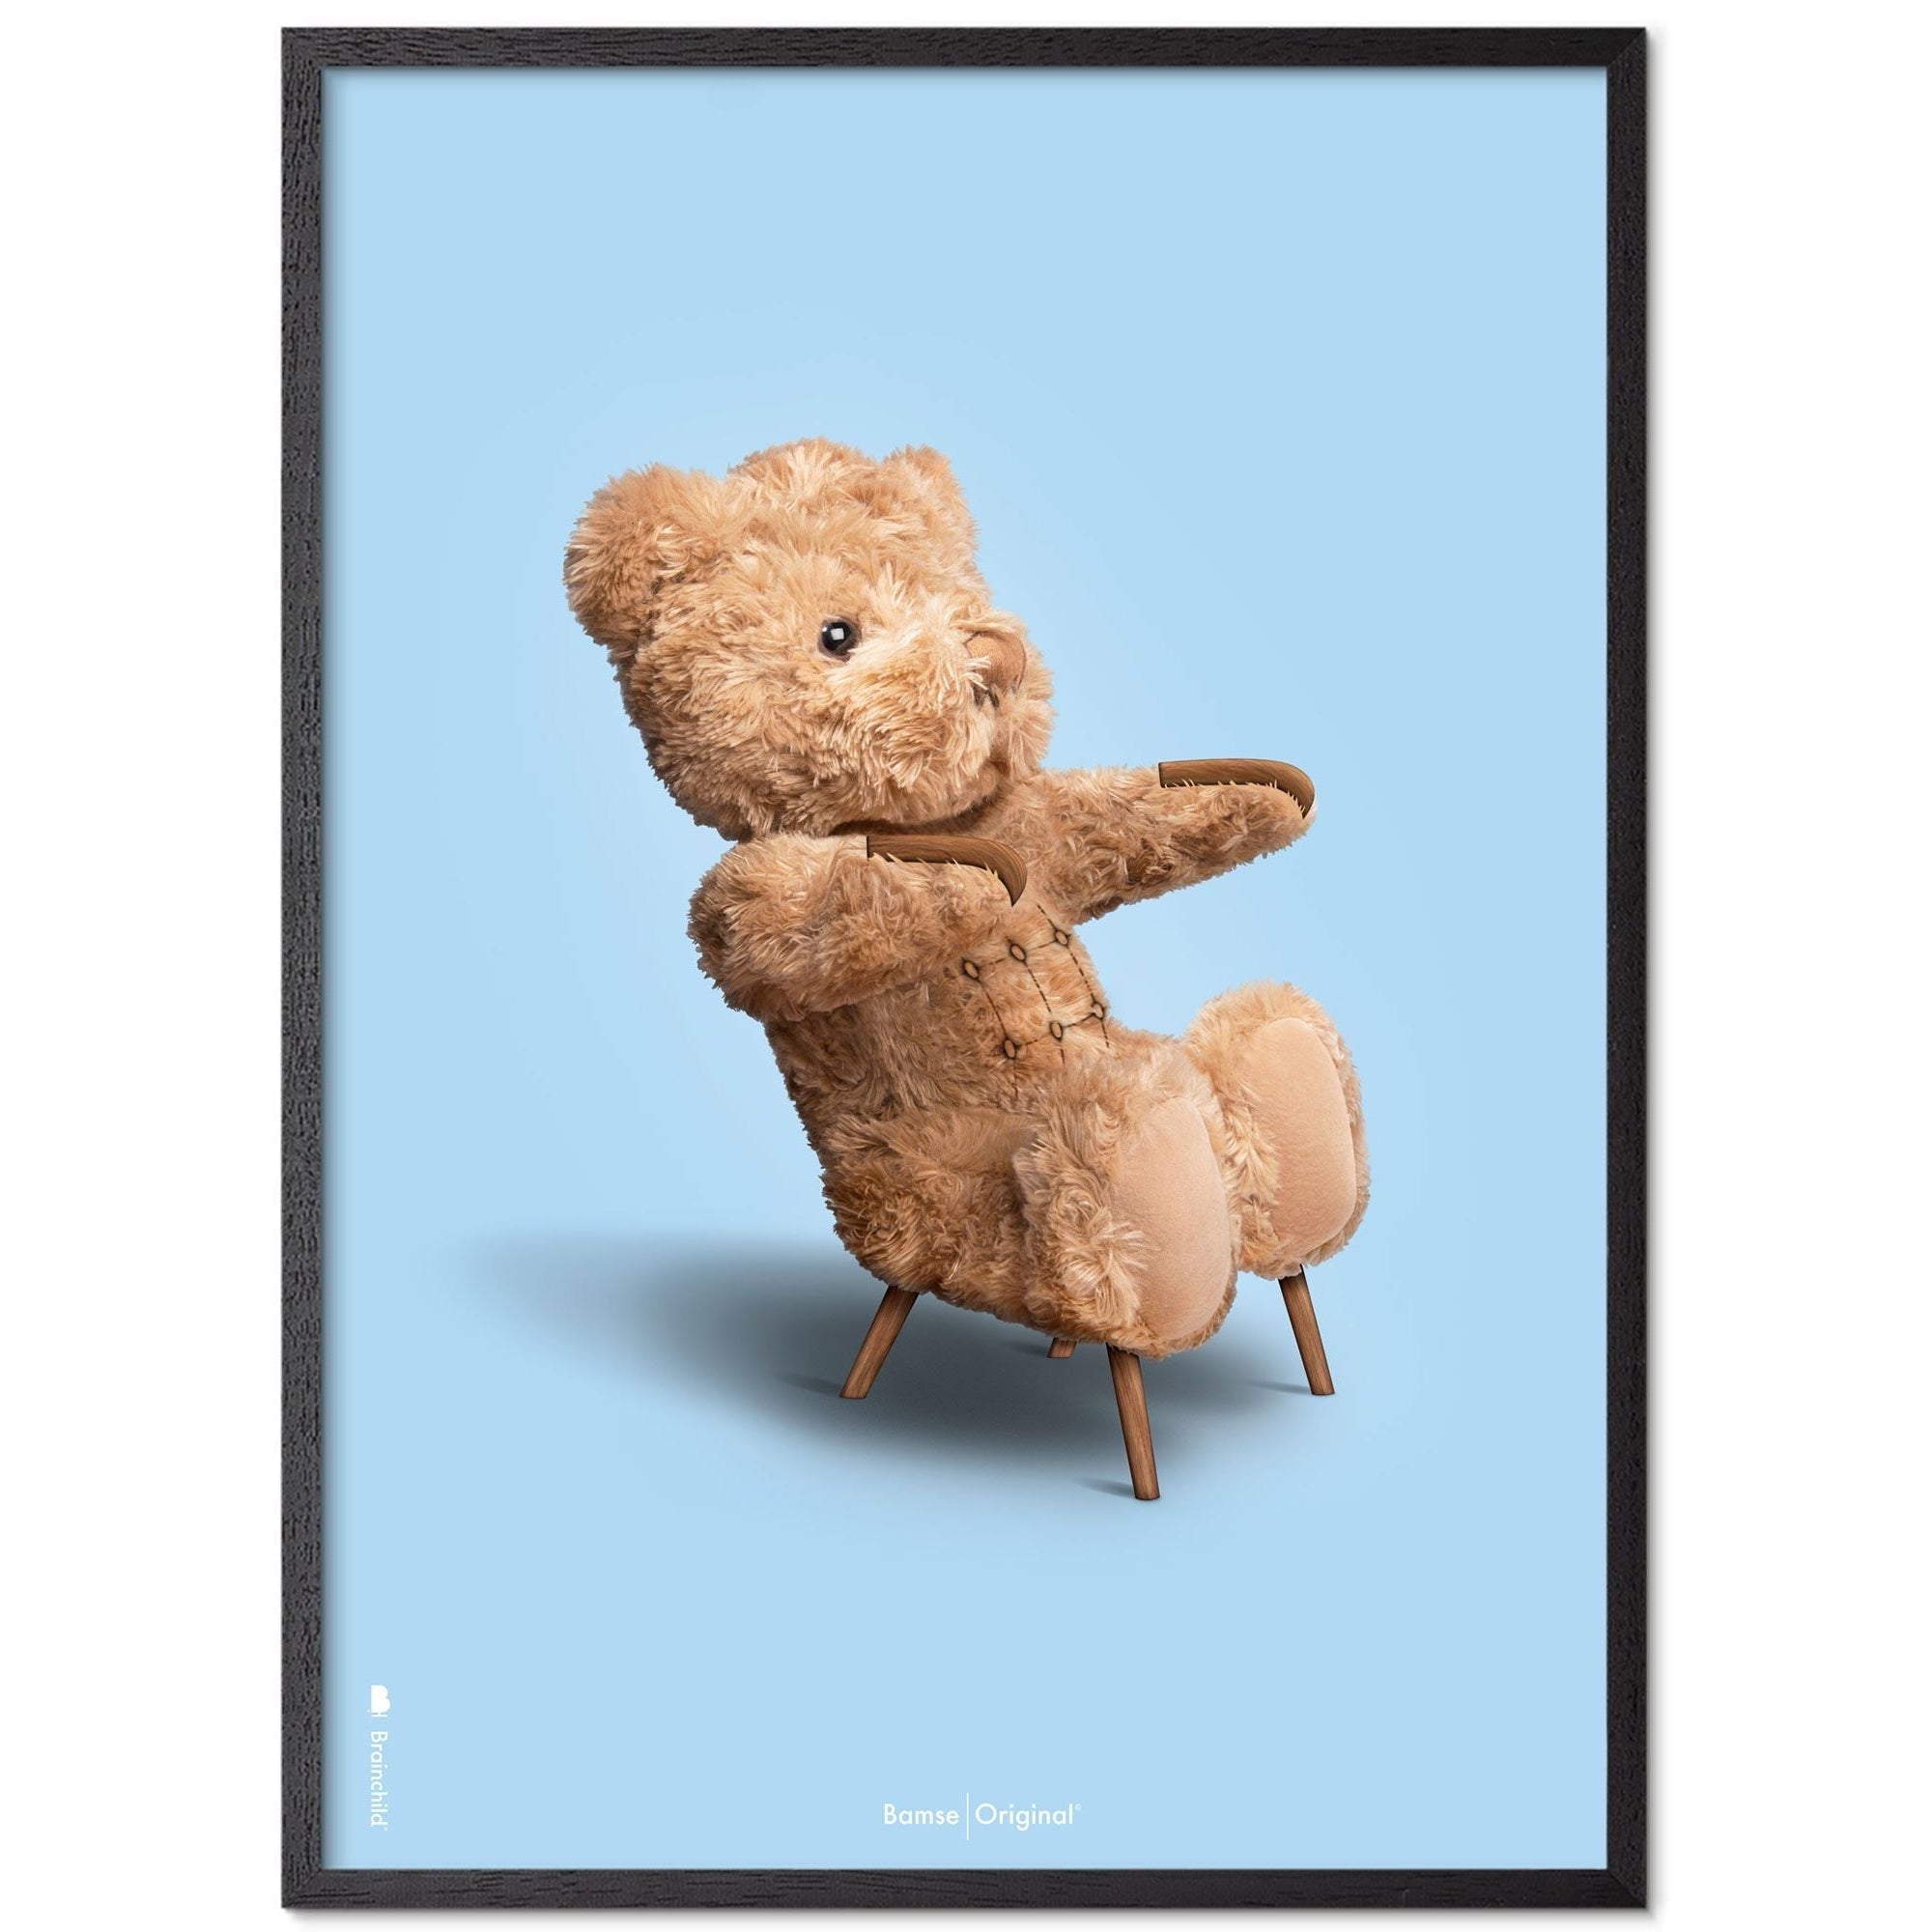 Marco de póster clásico de BrainChild Teddy Bear en madera lacada negra A5, fondo azul claro